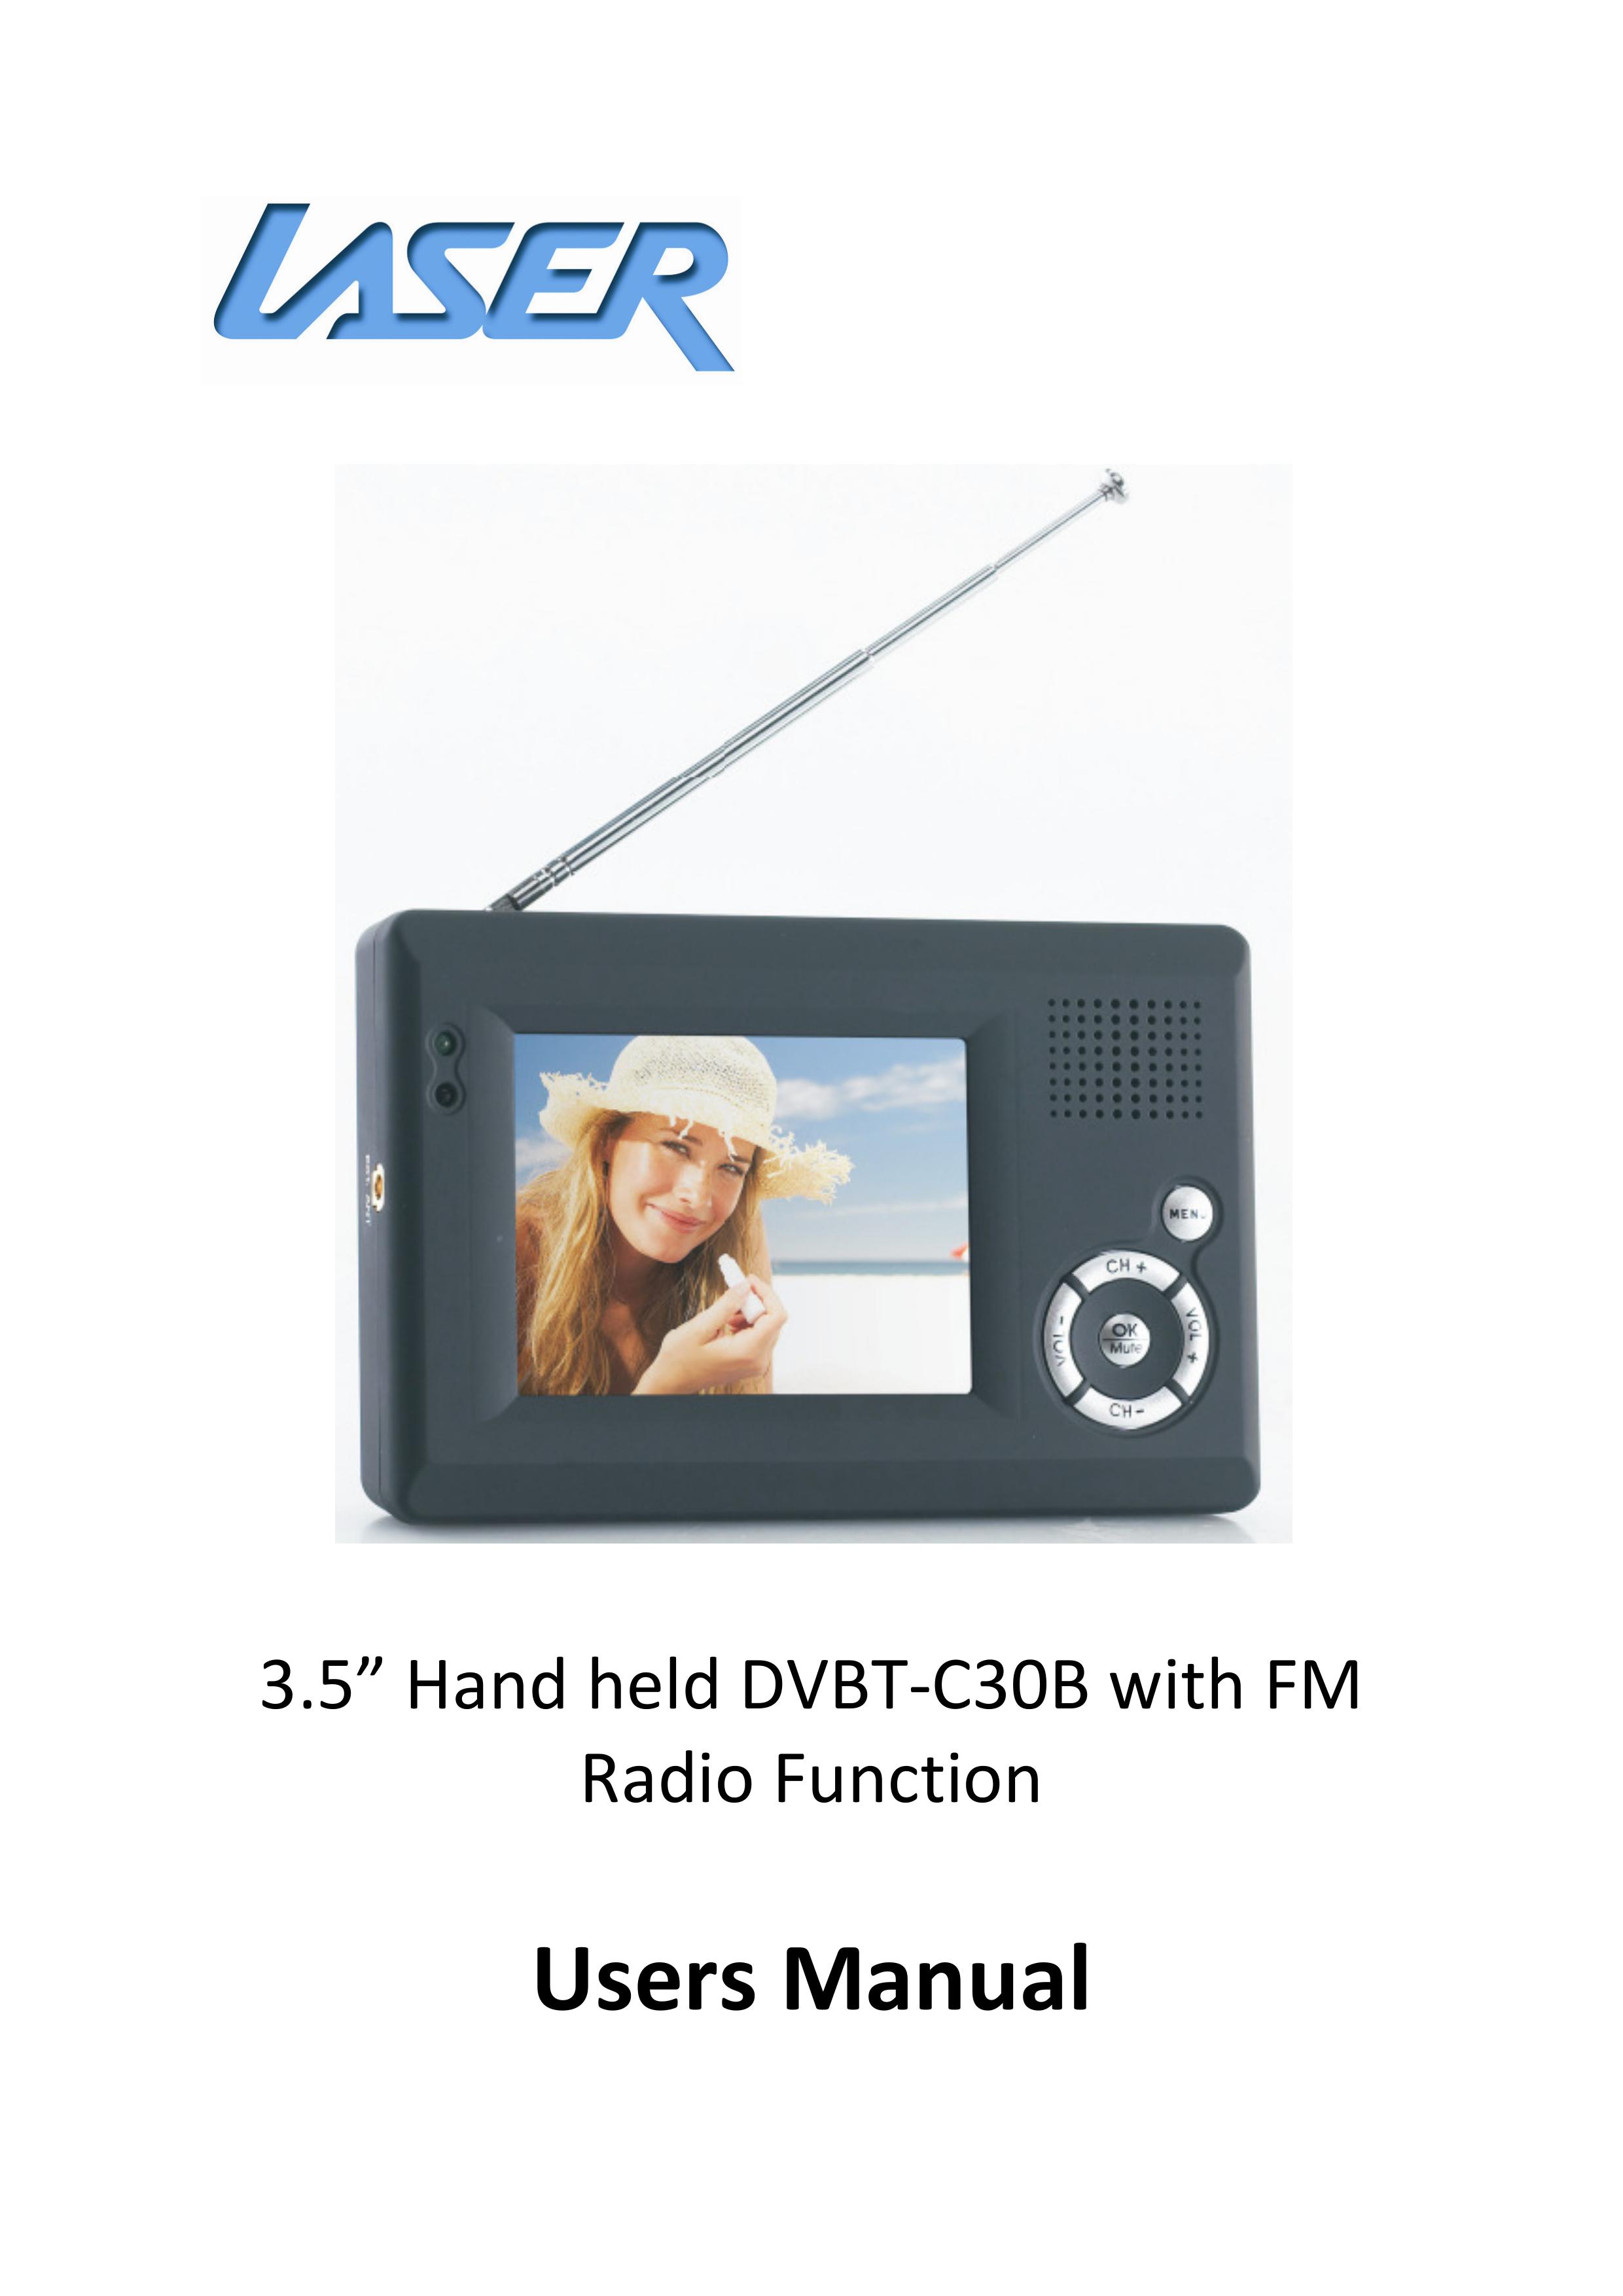 Laser DVBT-C30B Handheld TV User Manual (Page 1)